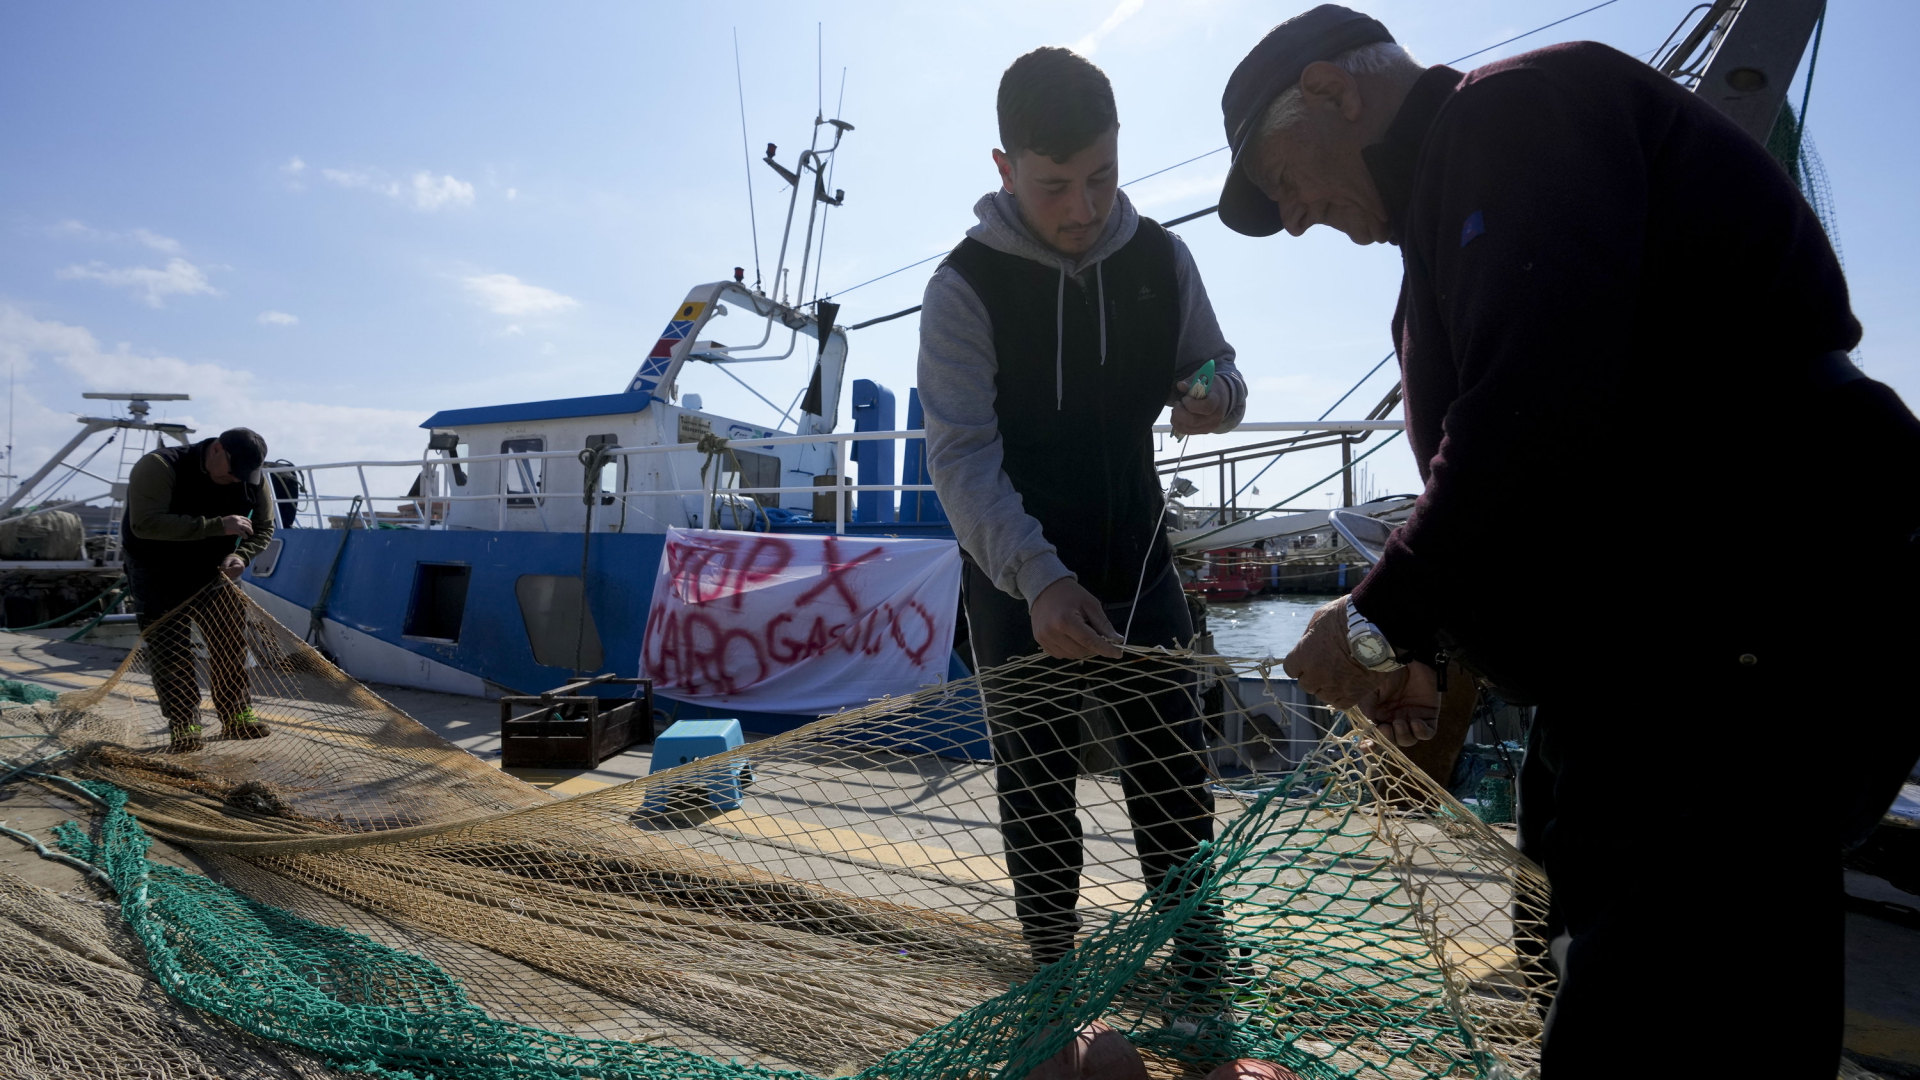 Fischer flicken Netze vor einem Fischerboot im Hafen von Fiumicino. | AP